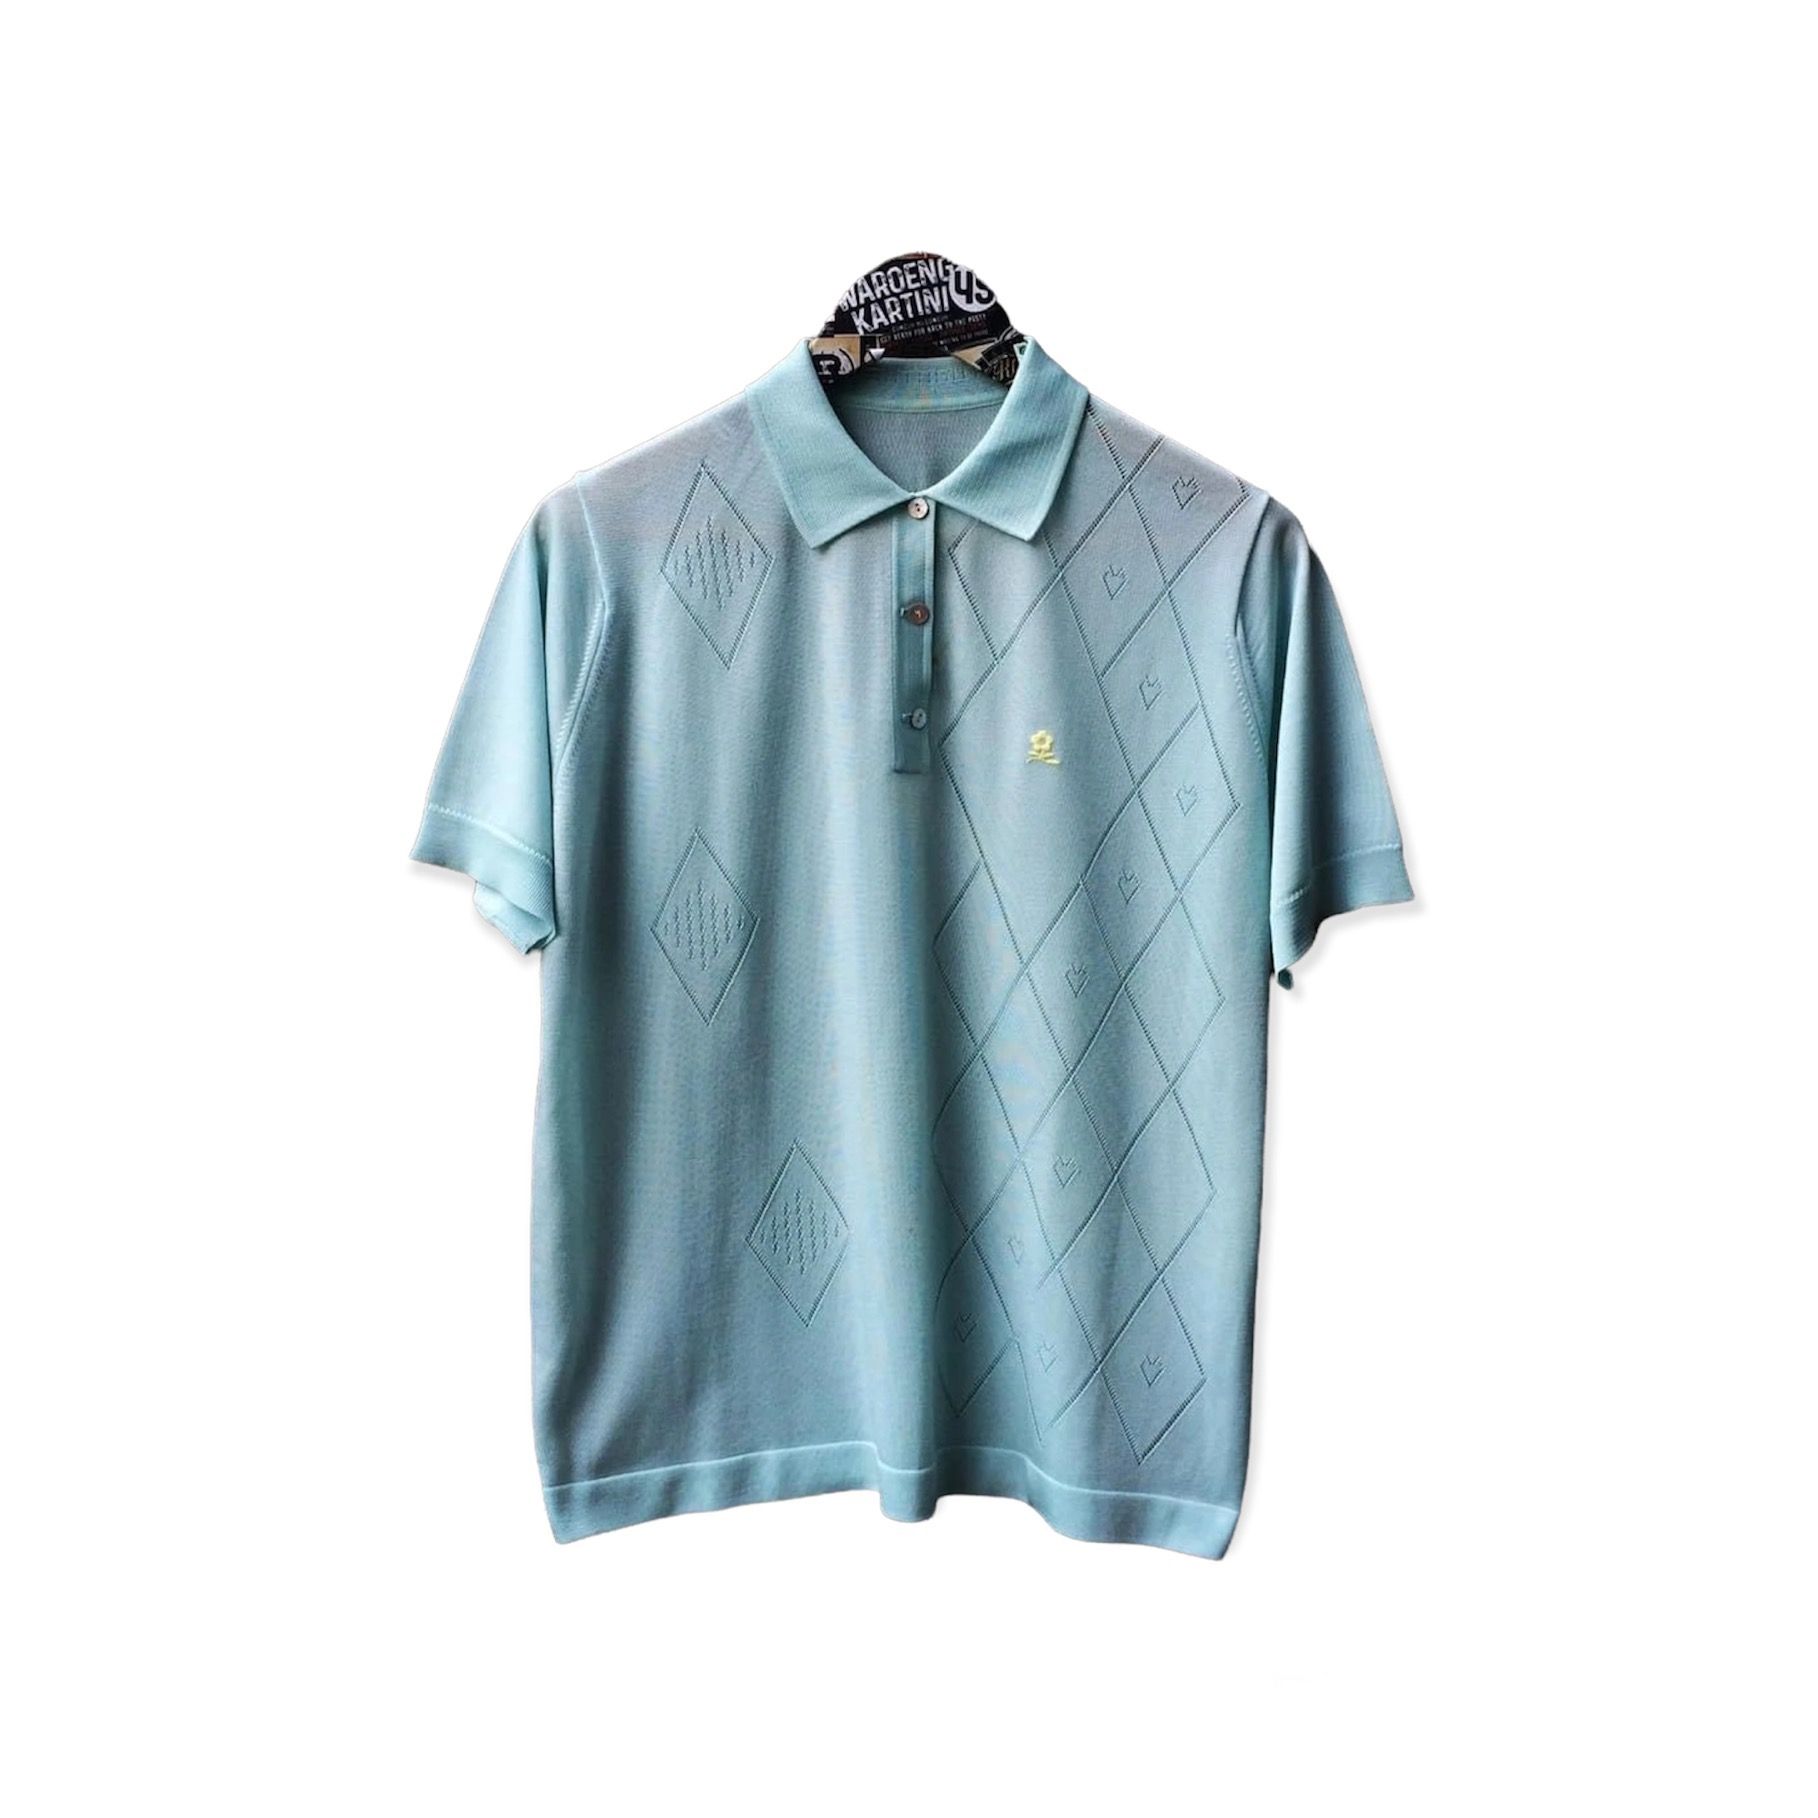 Montagut Paris Tshirt in Null, Men's (Size Medium) Product Image